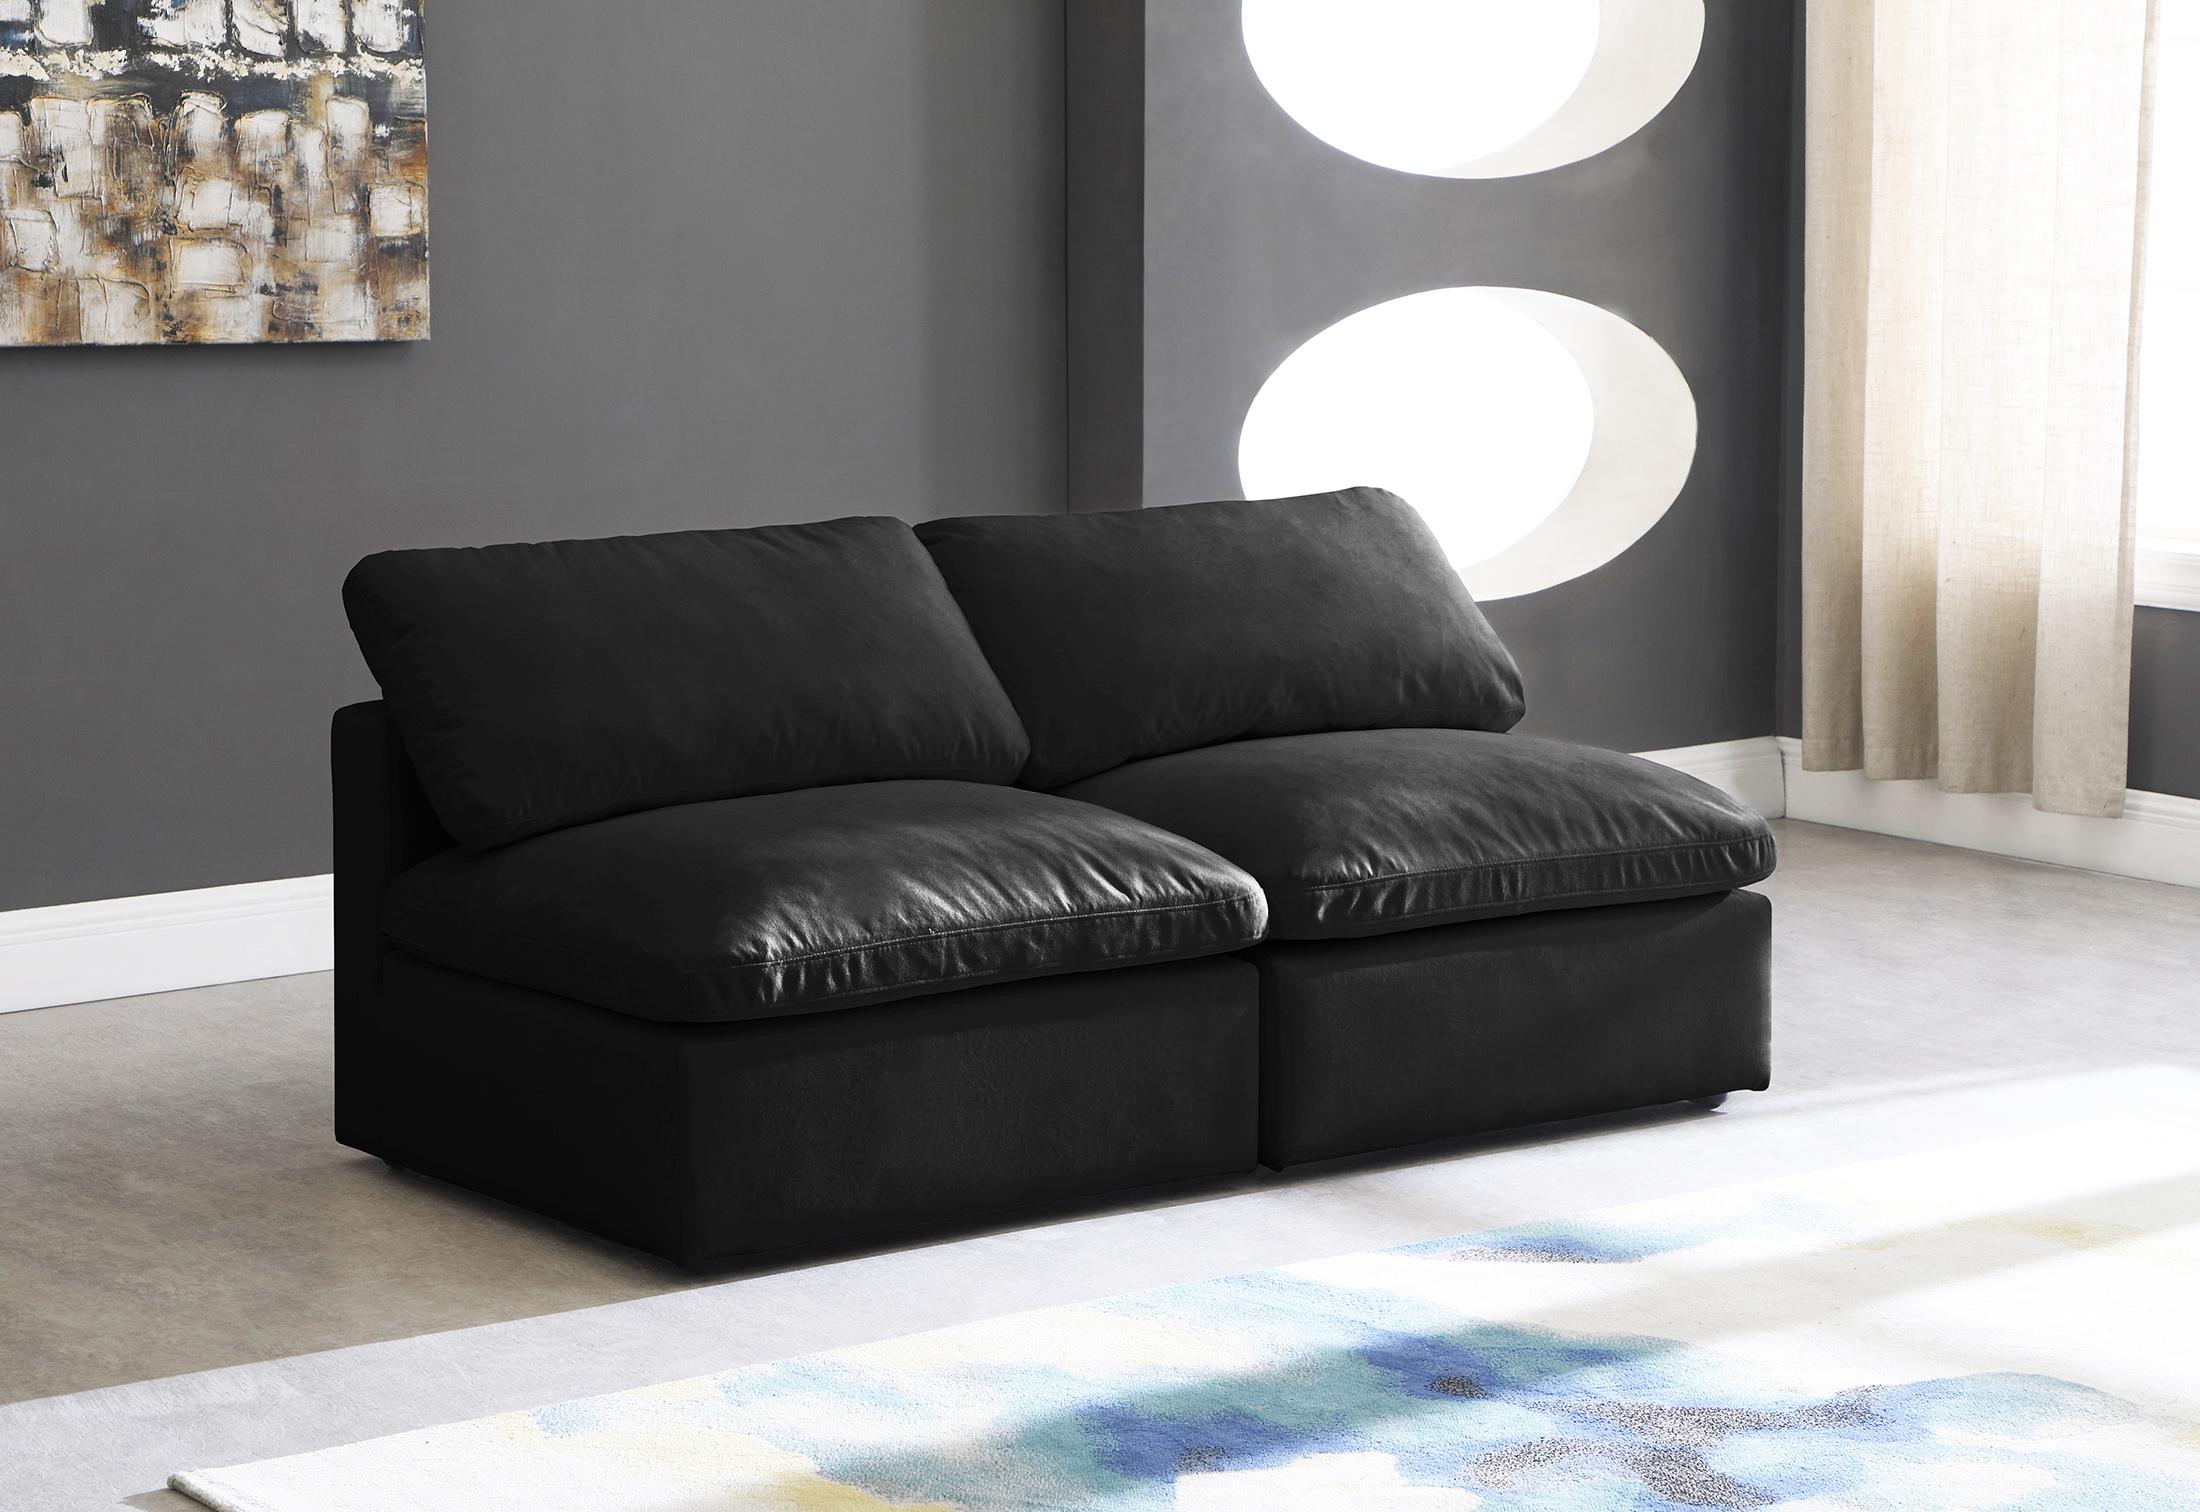 

    
BLACK Velvet Sofa Armless 70 Cloud Modular Overstuffed Down Filled SOFLEX Modern
